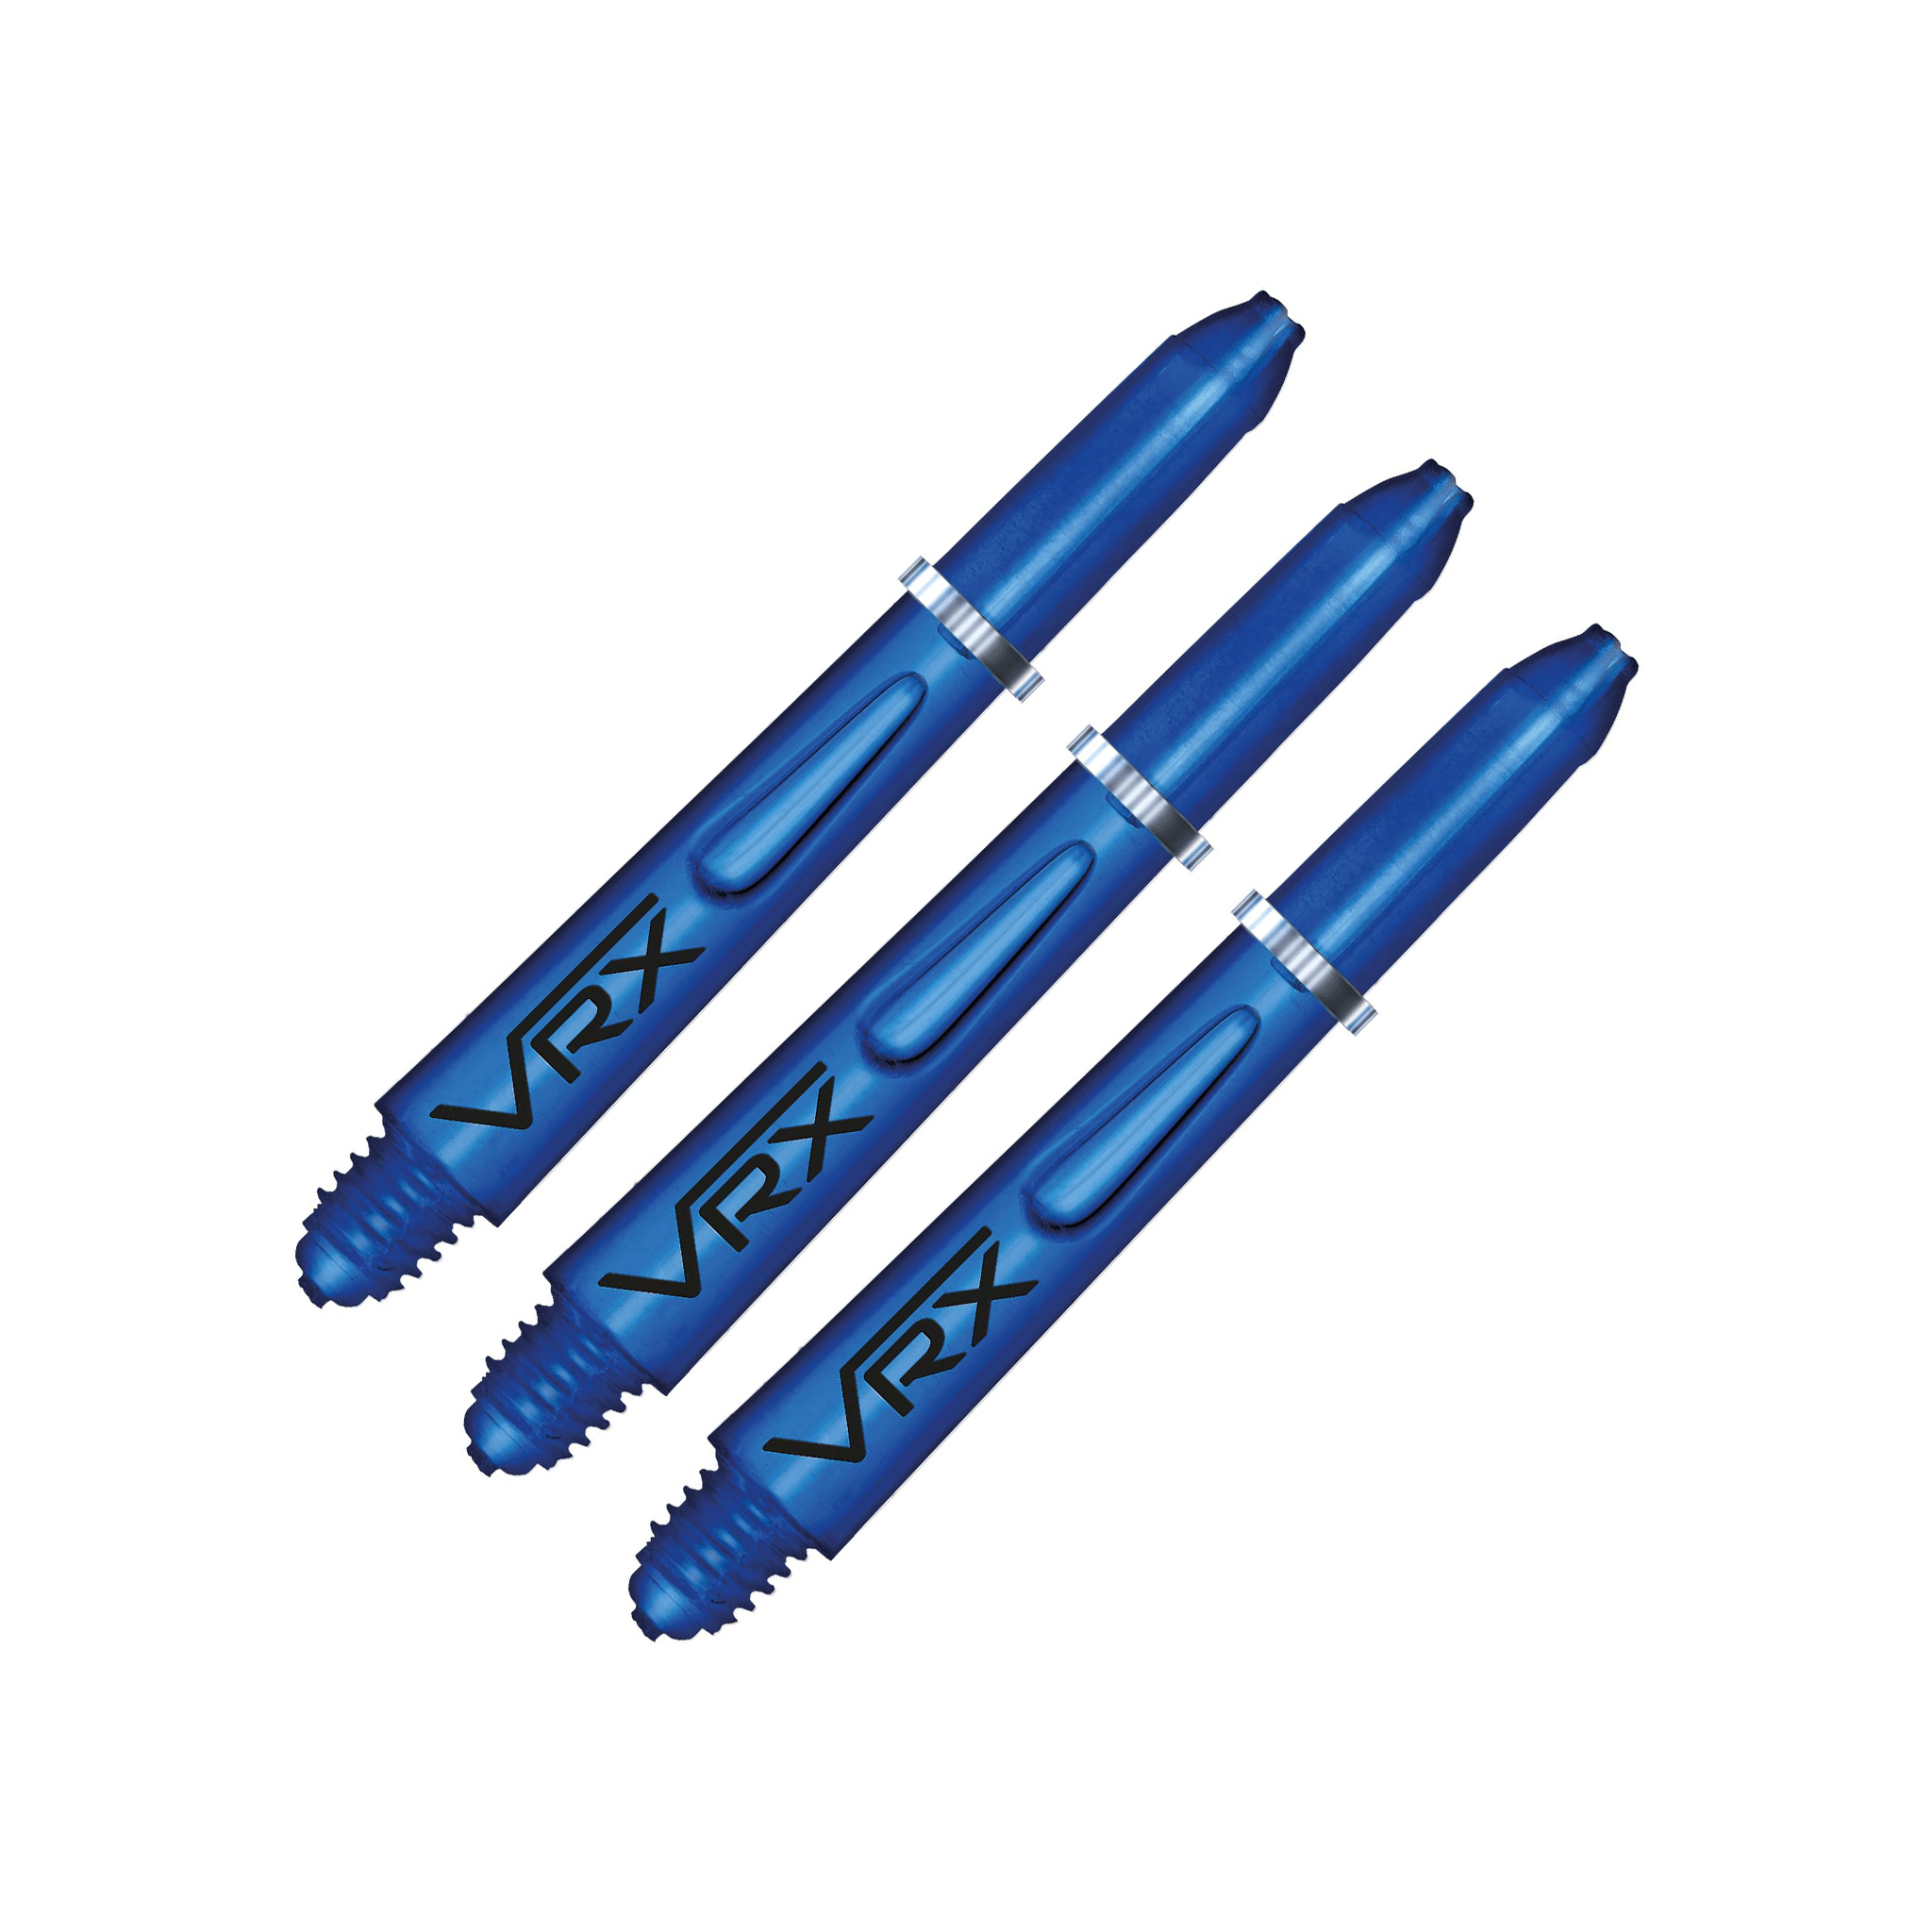 Red Dragon VRX Short (35mm) Polycarbonate Dart Shafts Blue Shafts